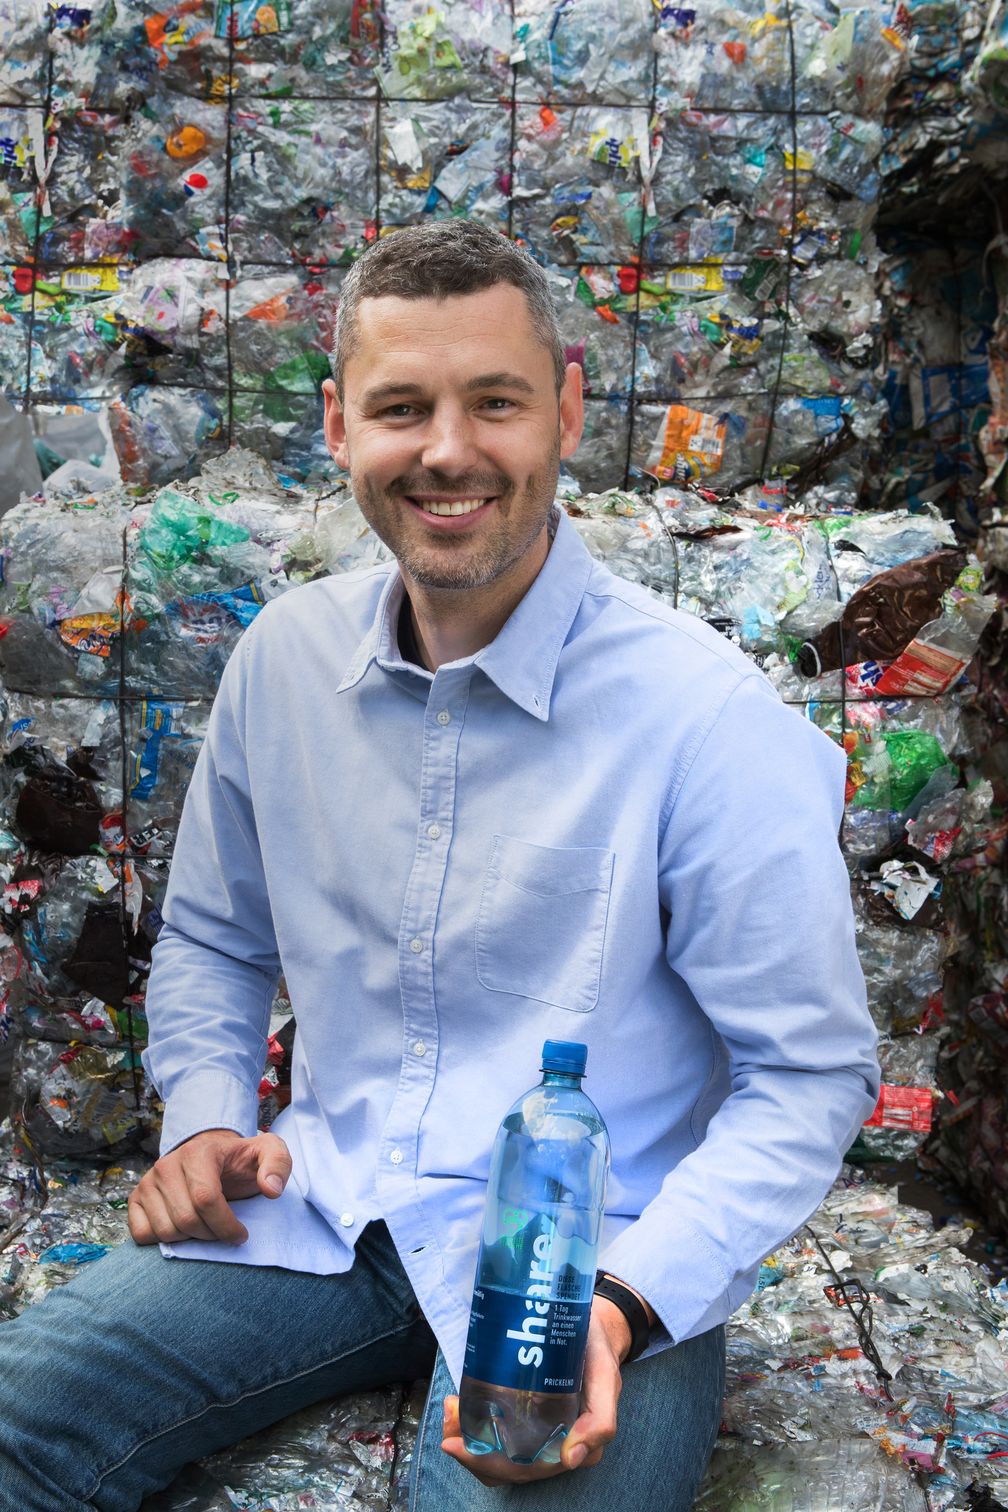 Dr. Sebastian Stricker mit der neuen "share"-Recyclatflasche vor dem Grundstoff seiner Innovation: Plastikmüll. Bild: "obs/REWE Markt GmbH/share"